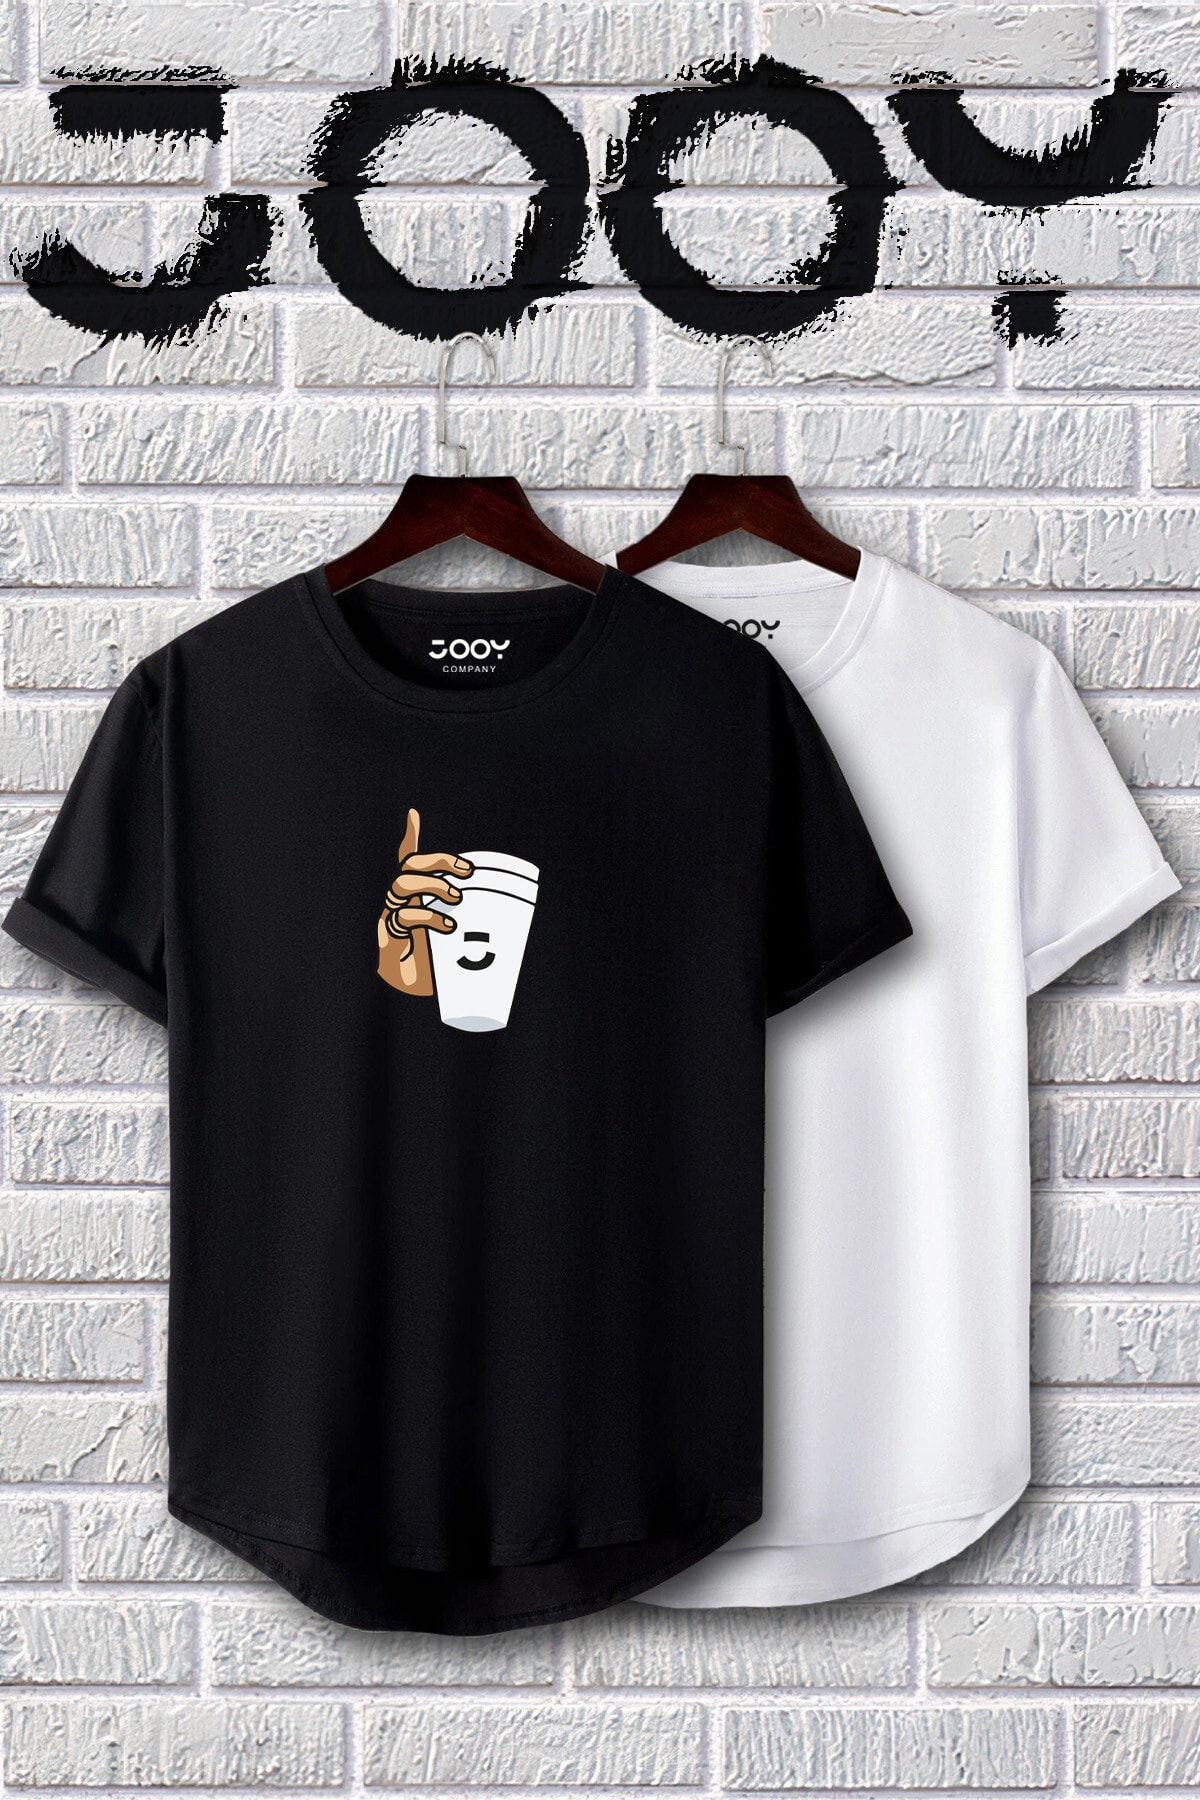 Jooy Company Siyah Beyaz Oval Kesim Bardak Tasarım Tshirt Ikili Set